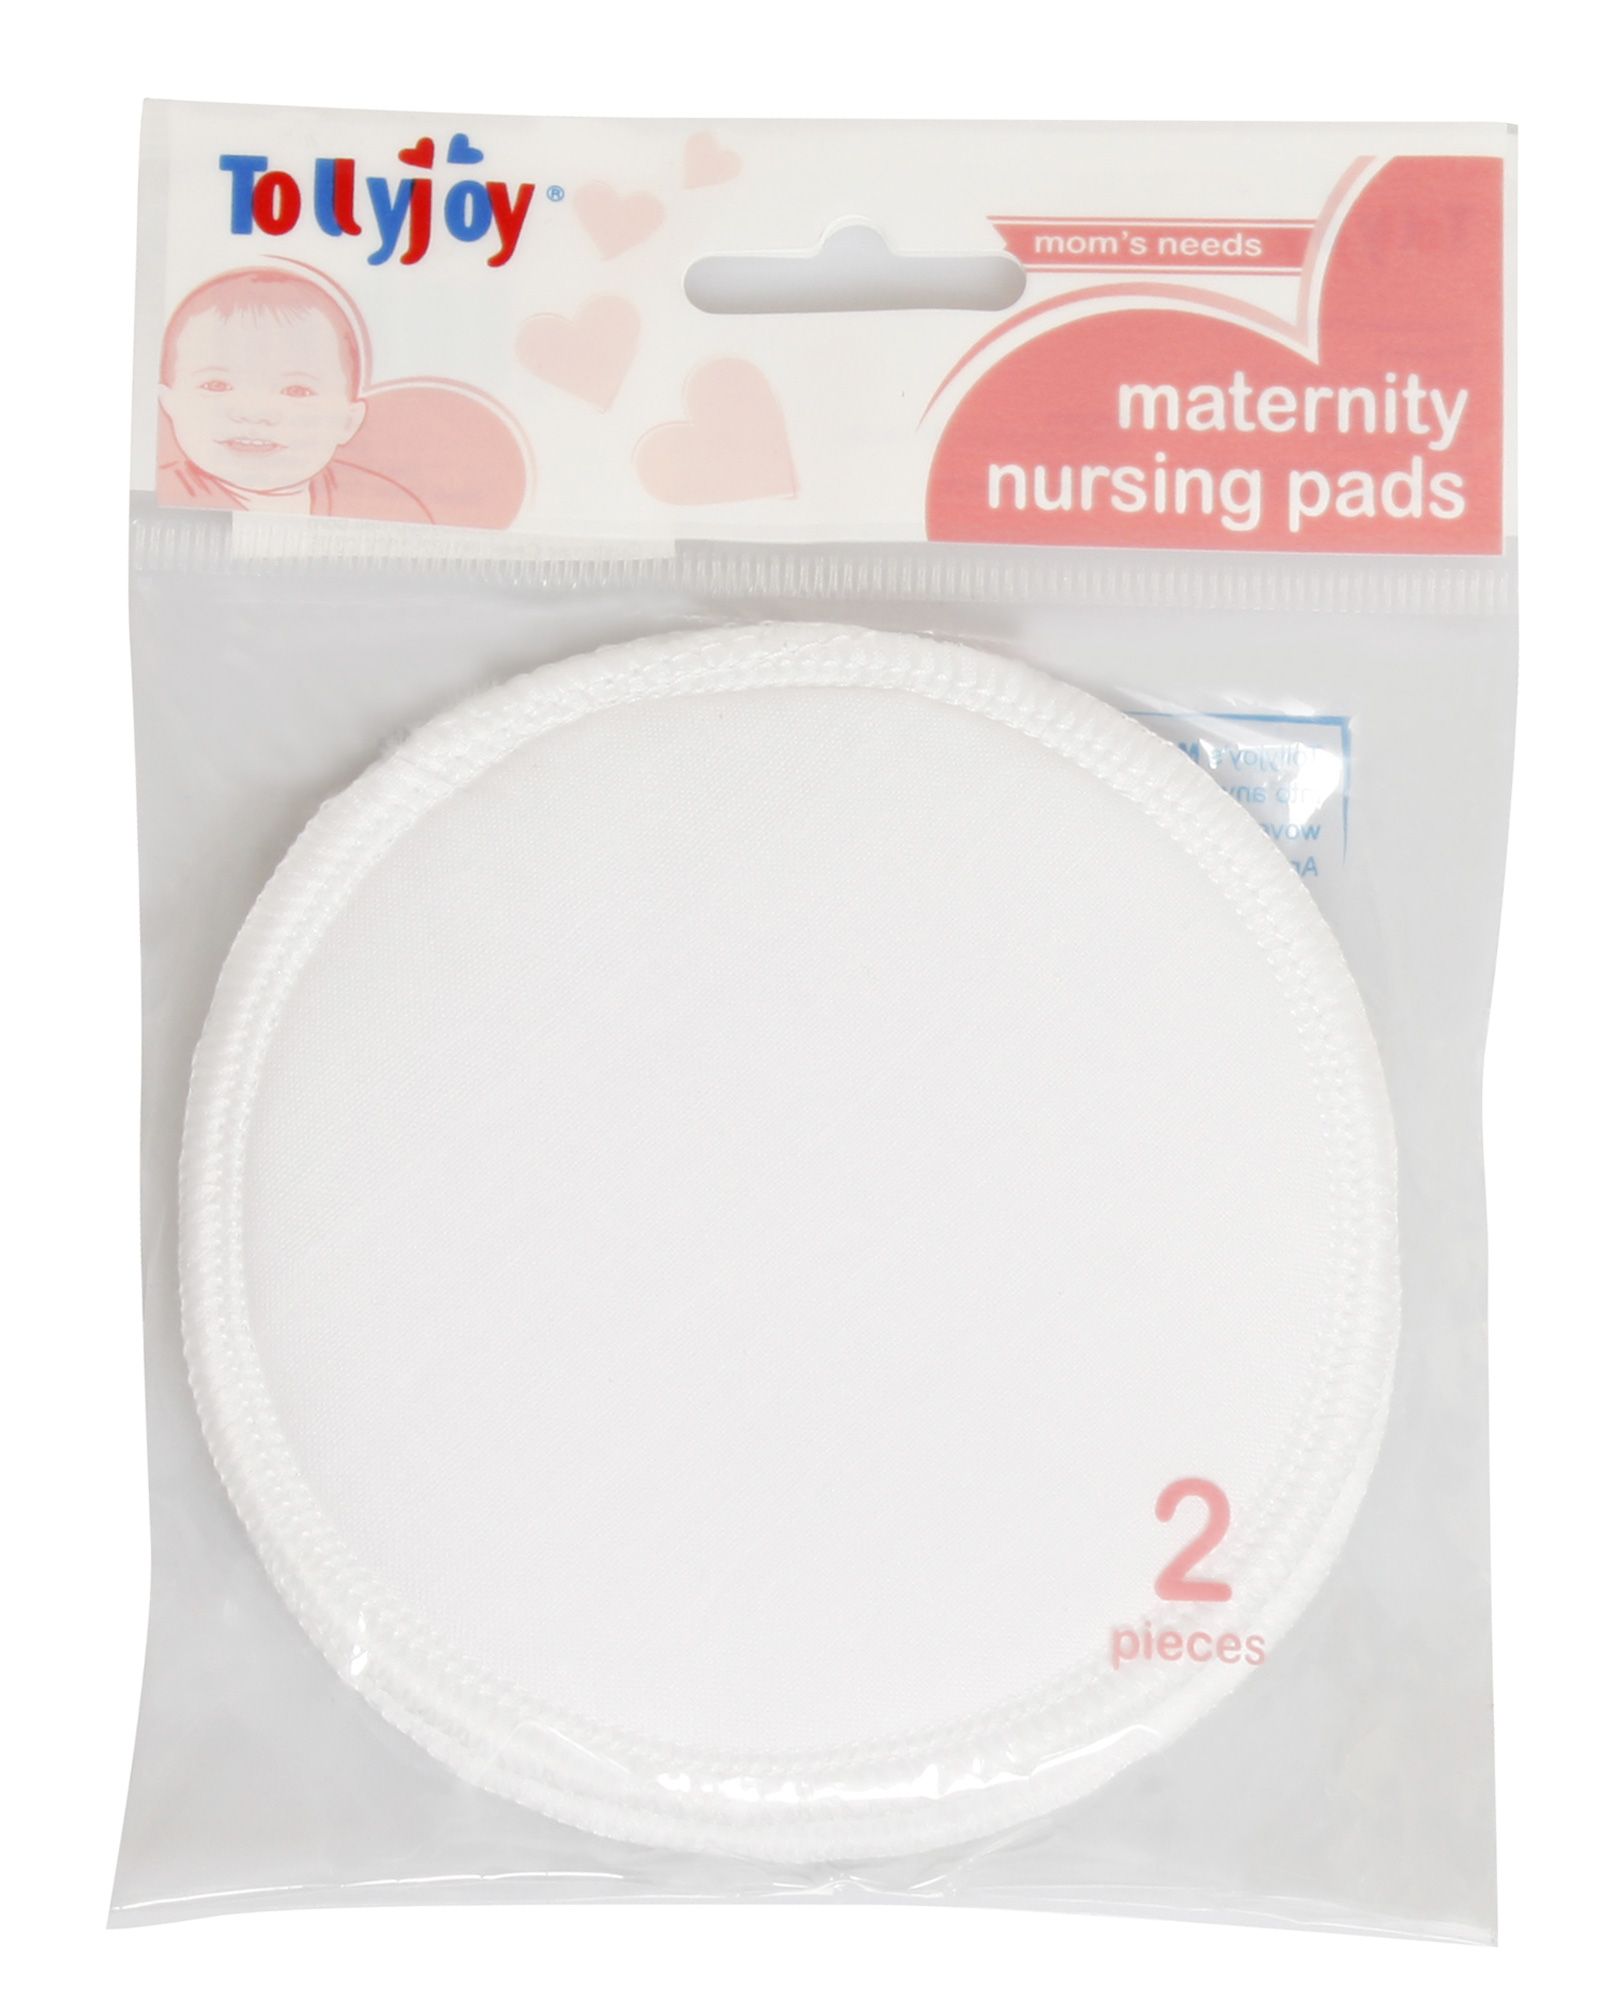 Tollyjoy Maternity Nursing Pads